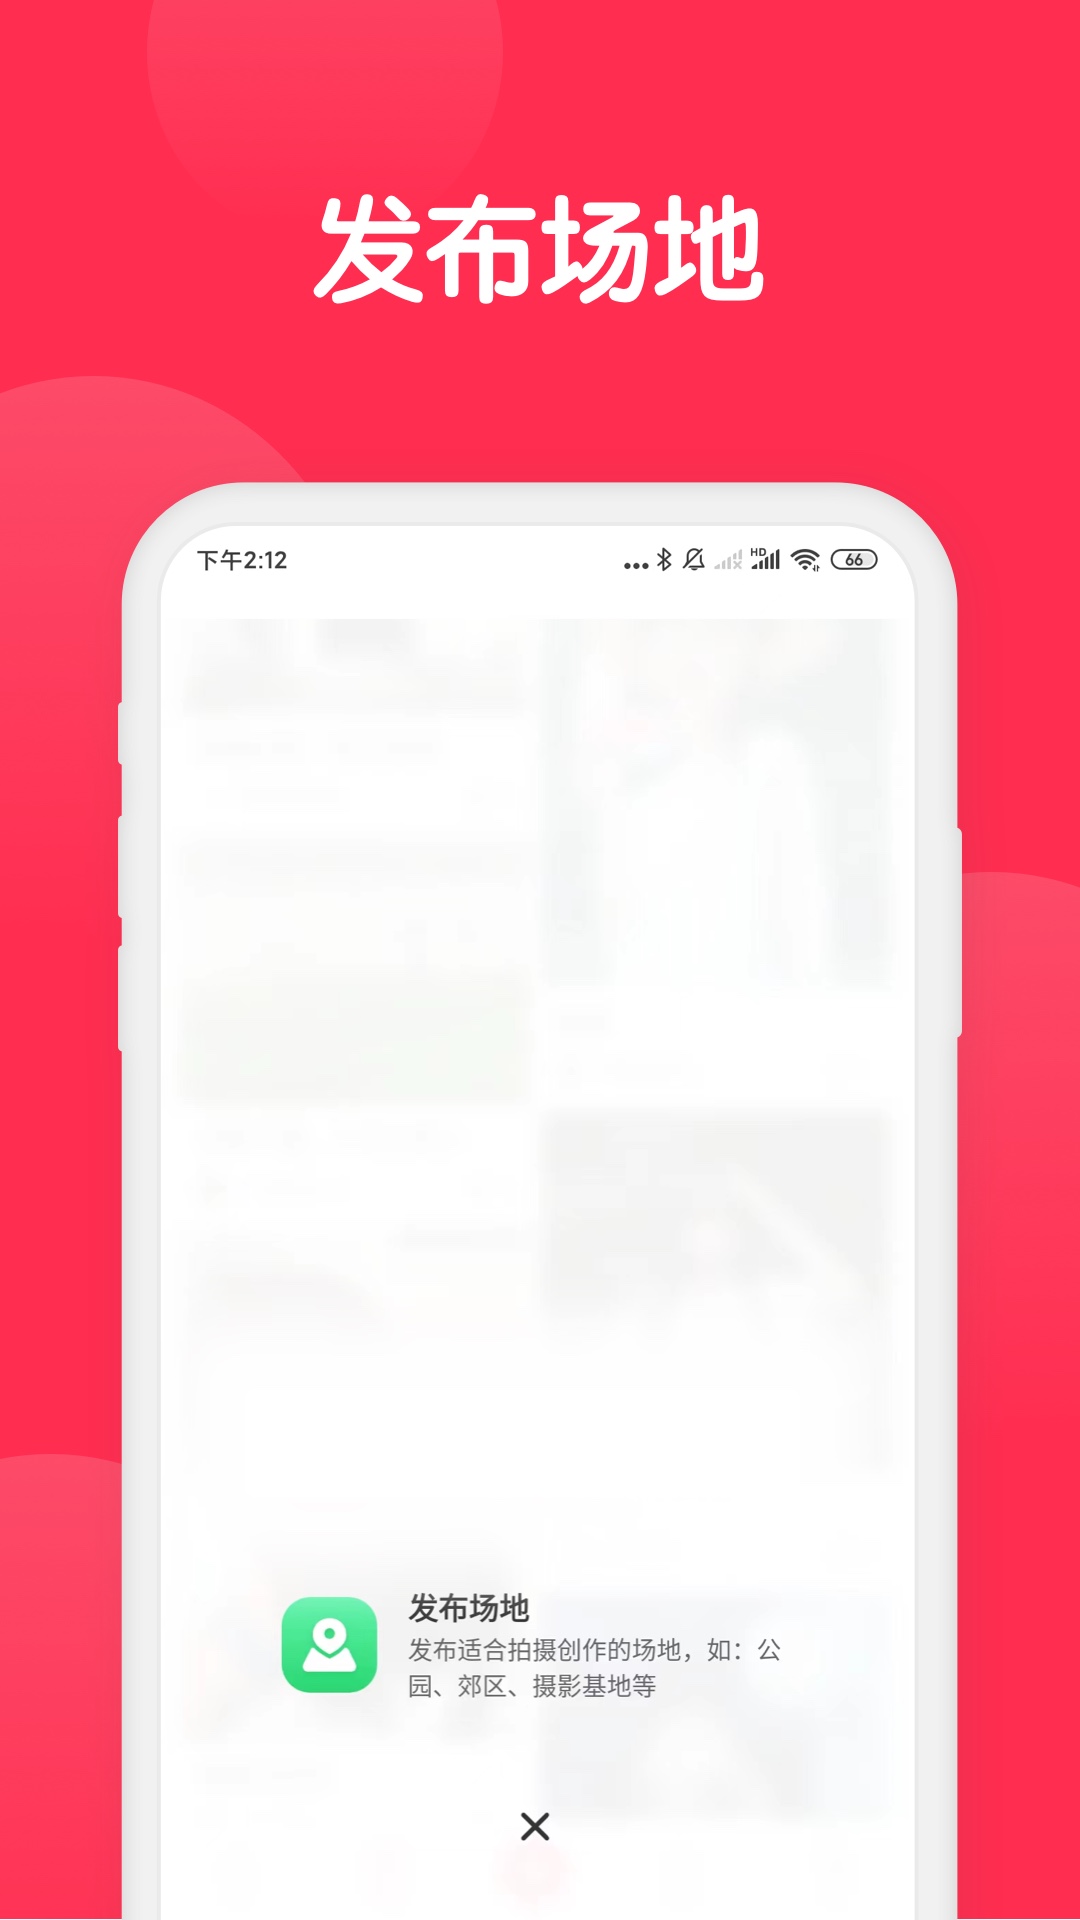 美影云app拍摄创作服务平台 截图2